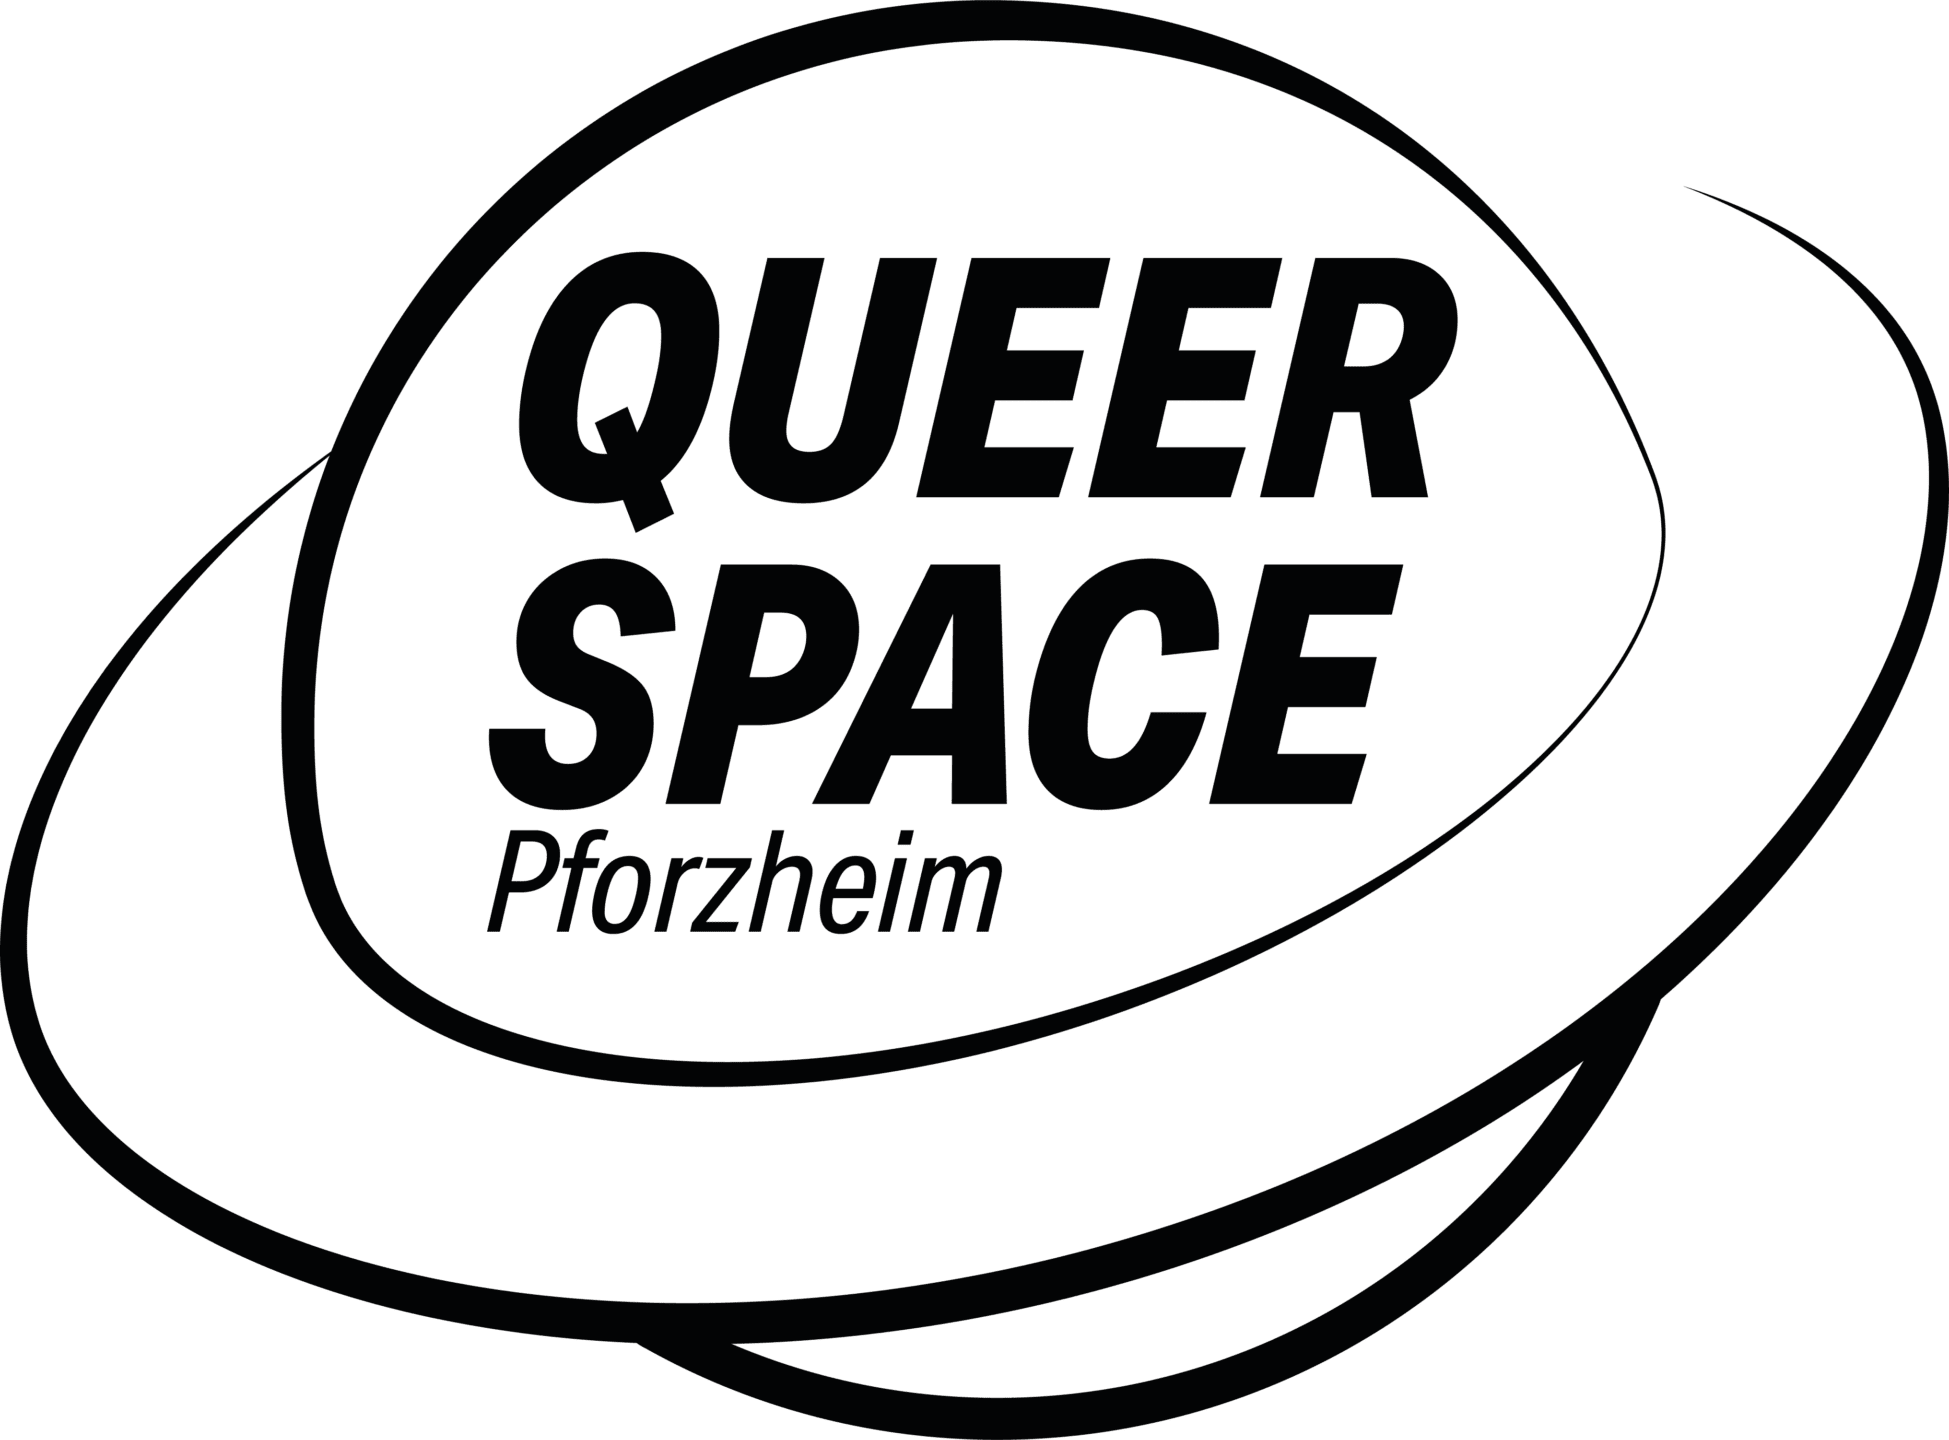 SPOTLIGHT Pforzheim - Diese Grafik beinhaltet das Logo des Beratungsprojekets "Queen Space" für queere Menschen, Angehörige und Interessierte.